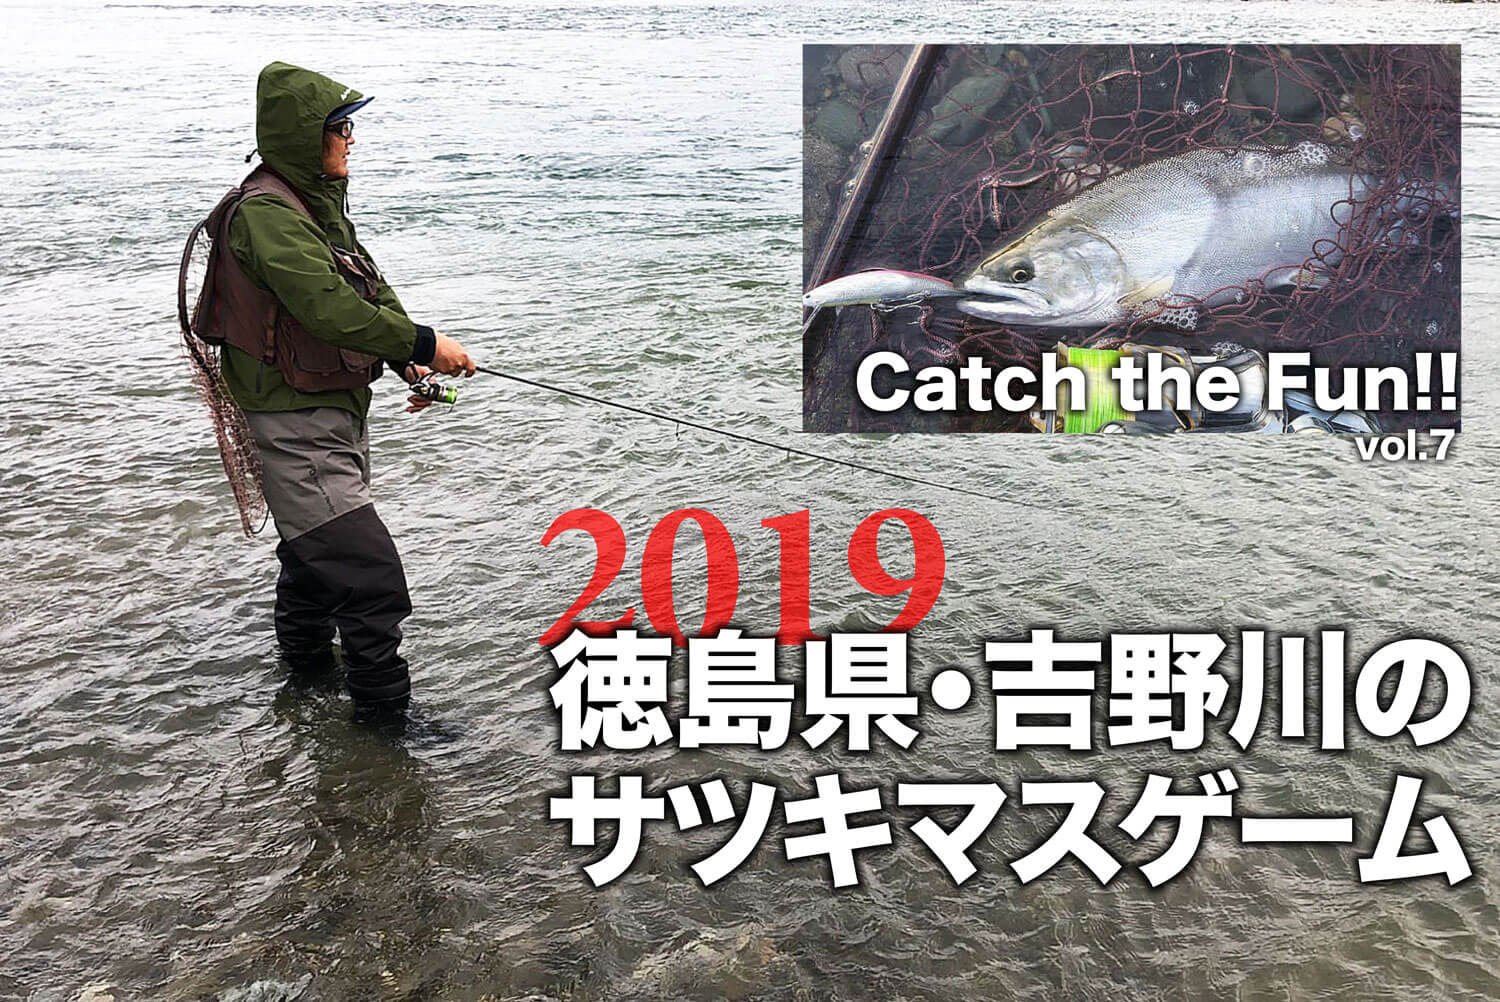 19徳島県 吉野川のサツキマスゲーム Catch The Fun Vol 7 Sw 釣り人のためのメディア